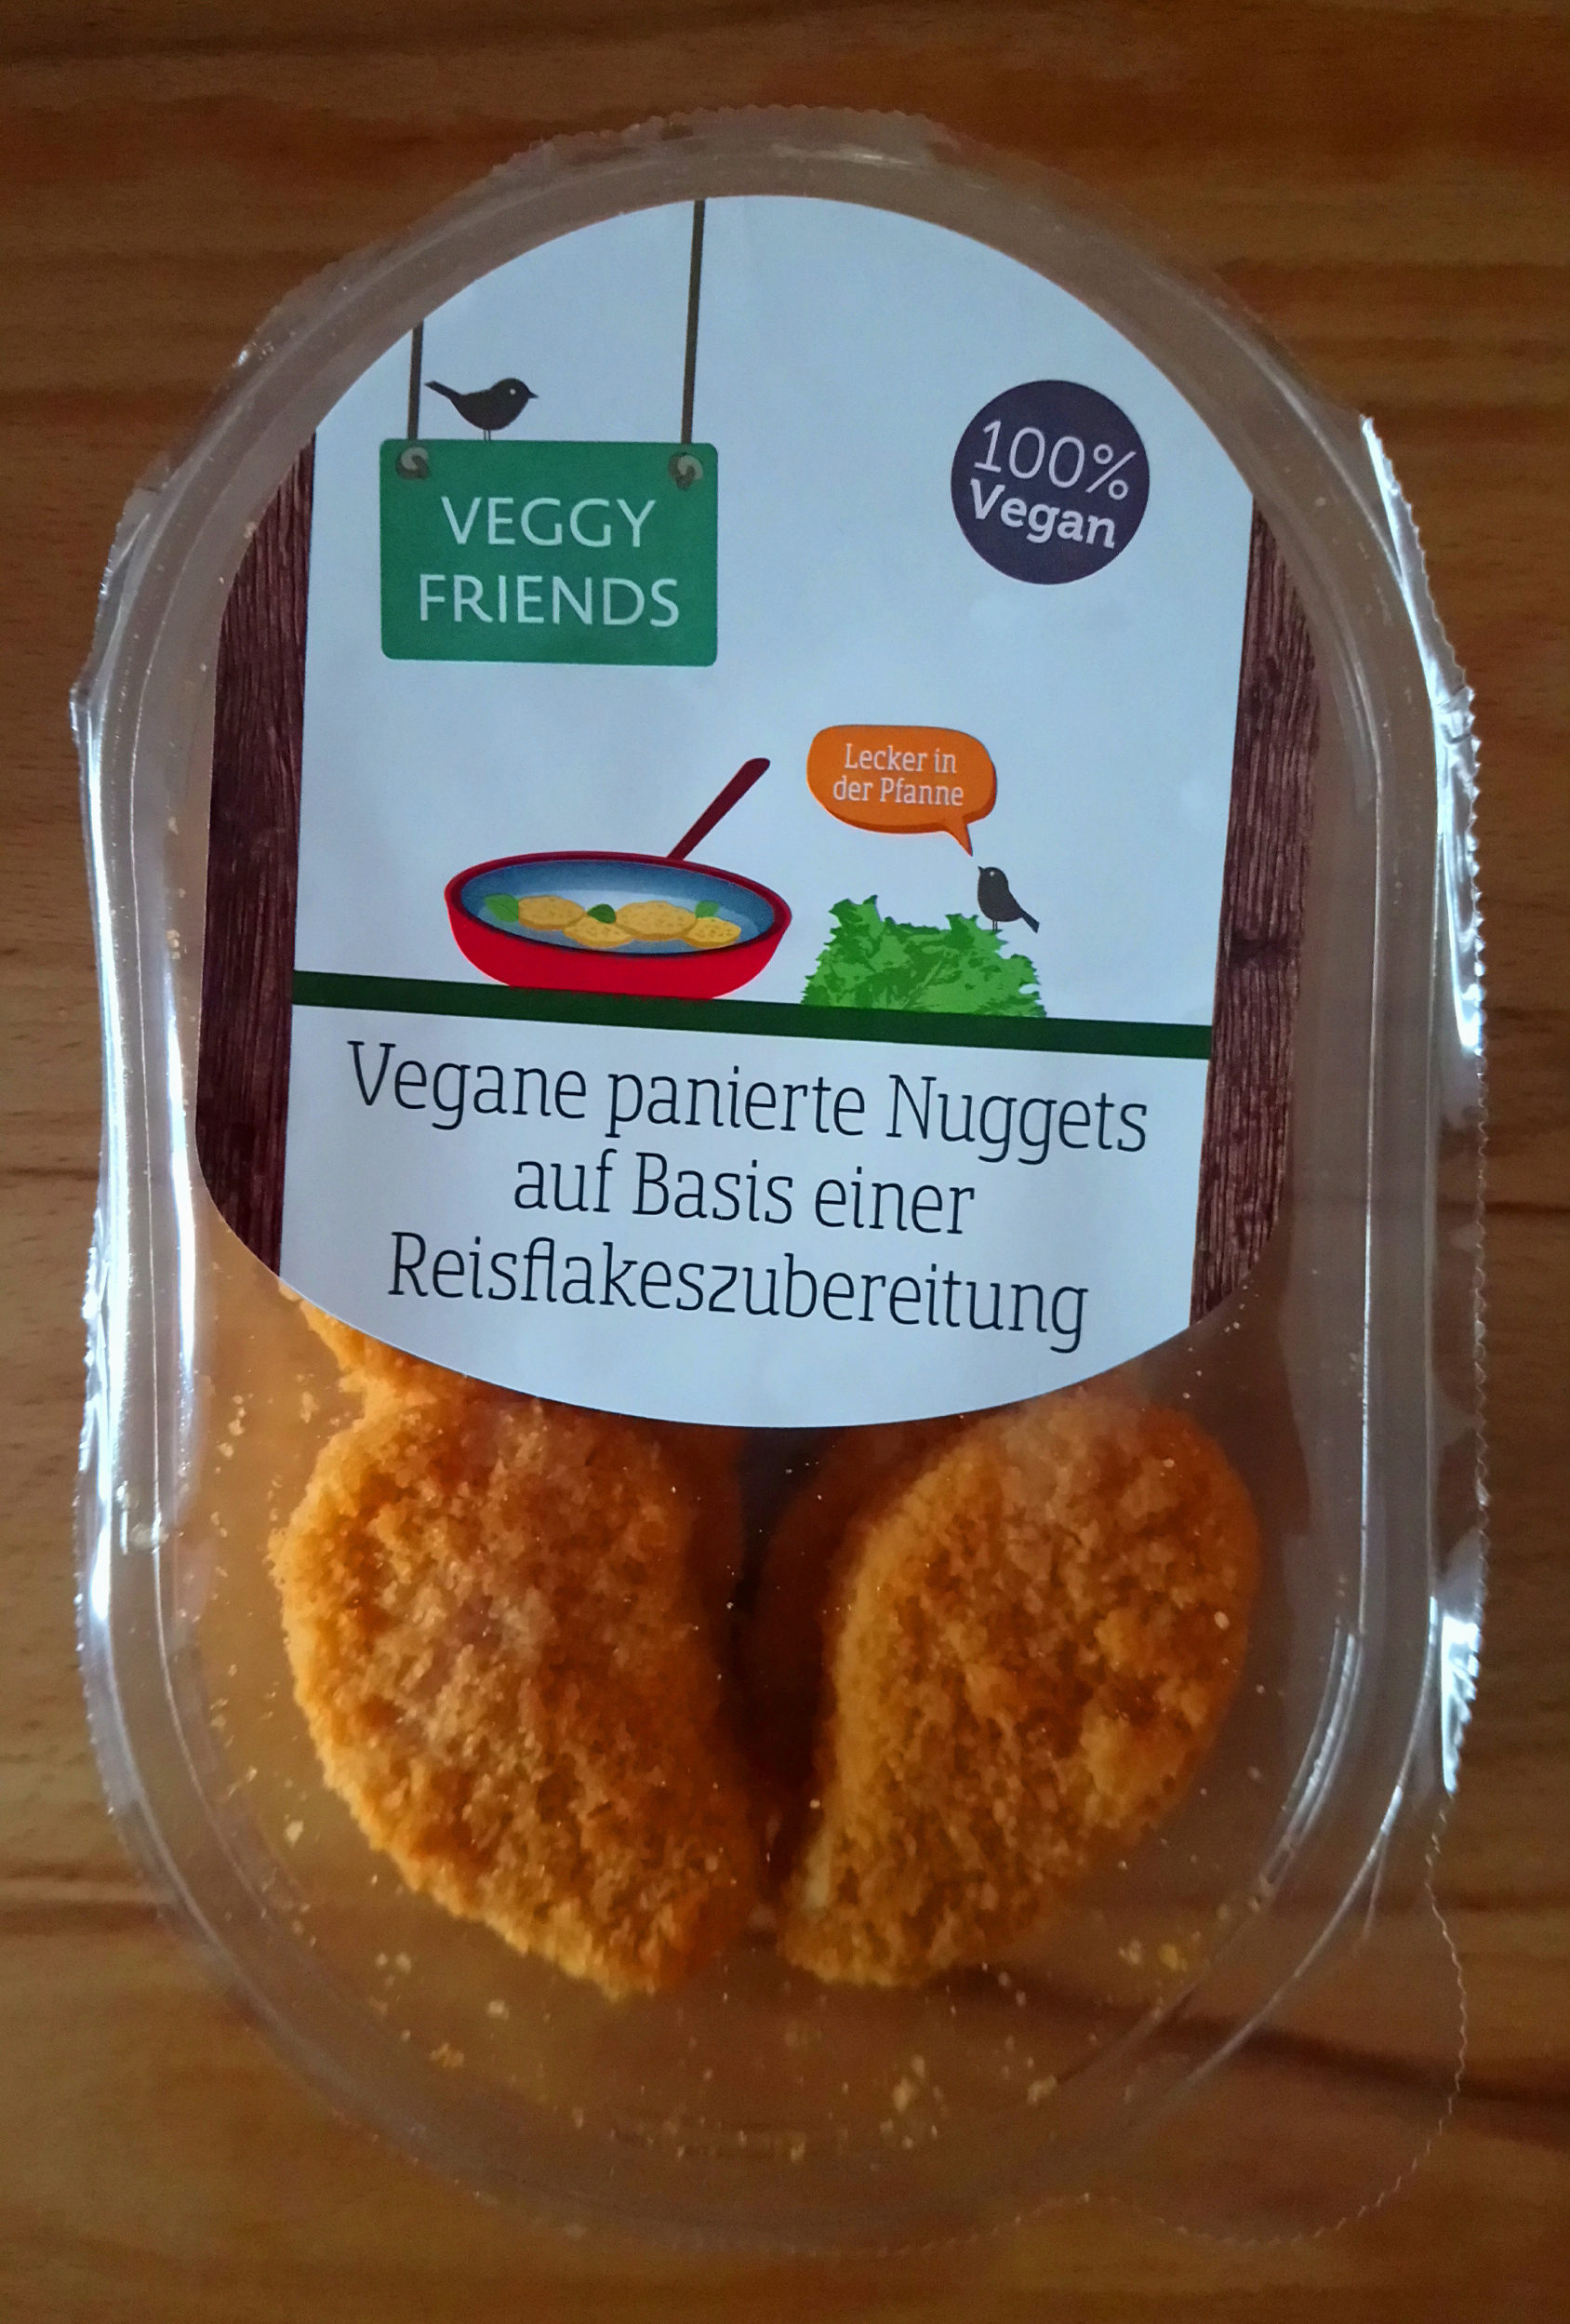 Vegane panierte Nuggets auf Basis einer Reisflakeszubereitung - Produkt